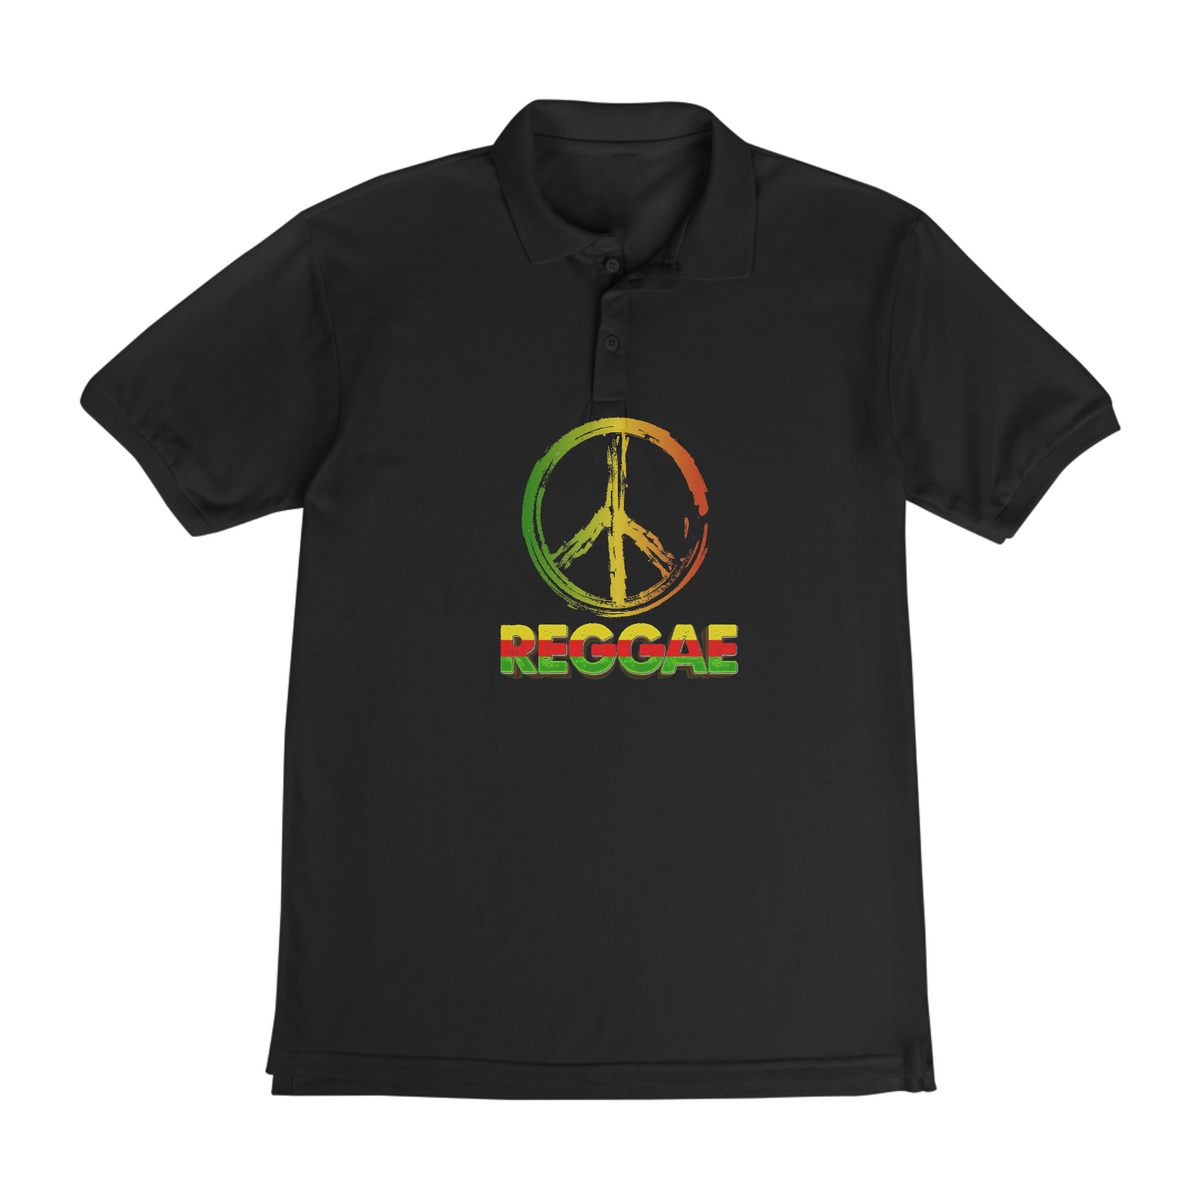 Nome do produto: Camisa polo reggae